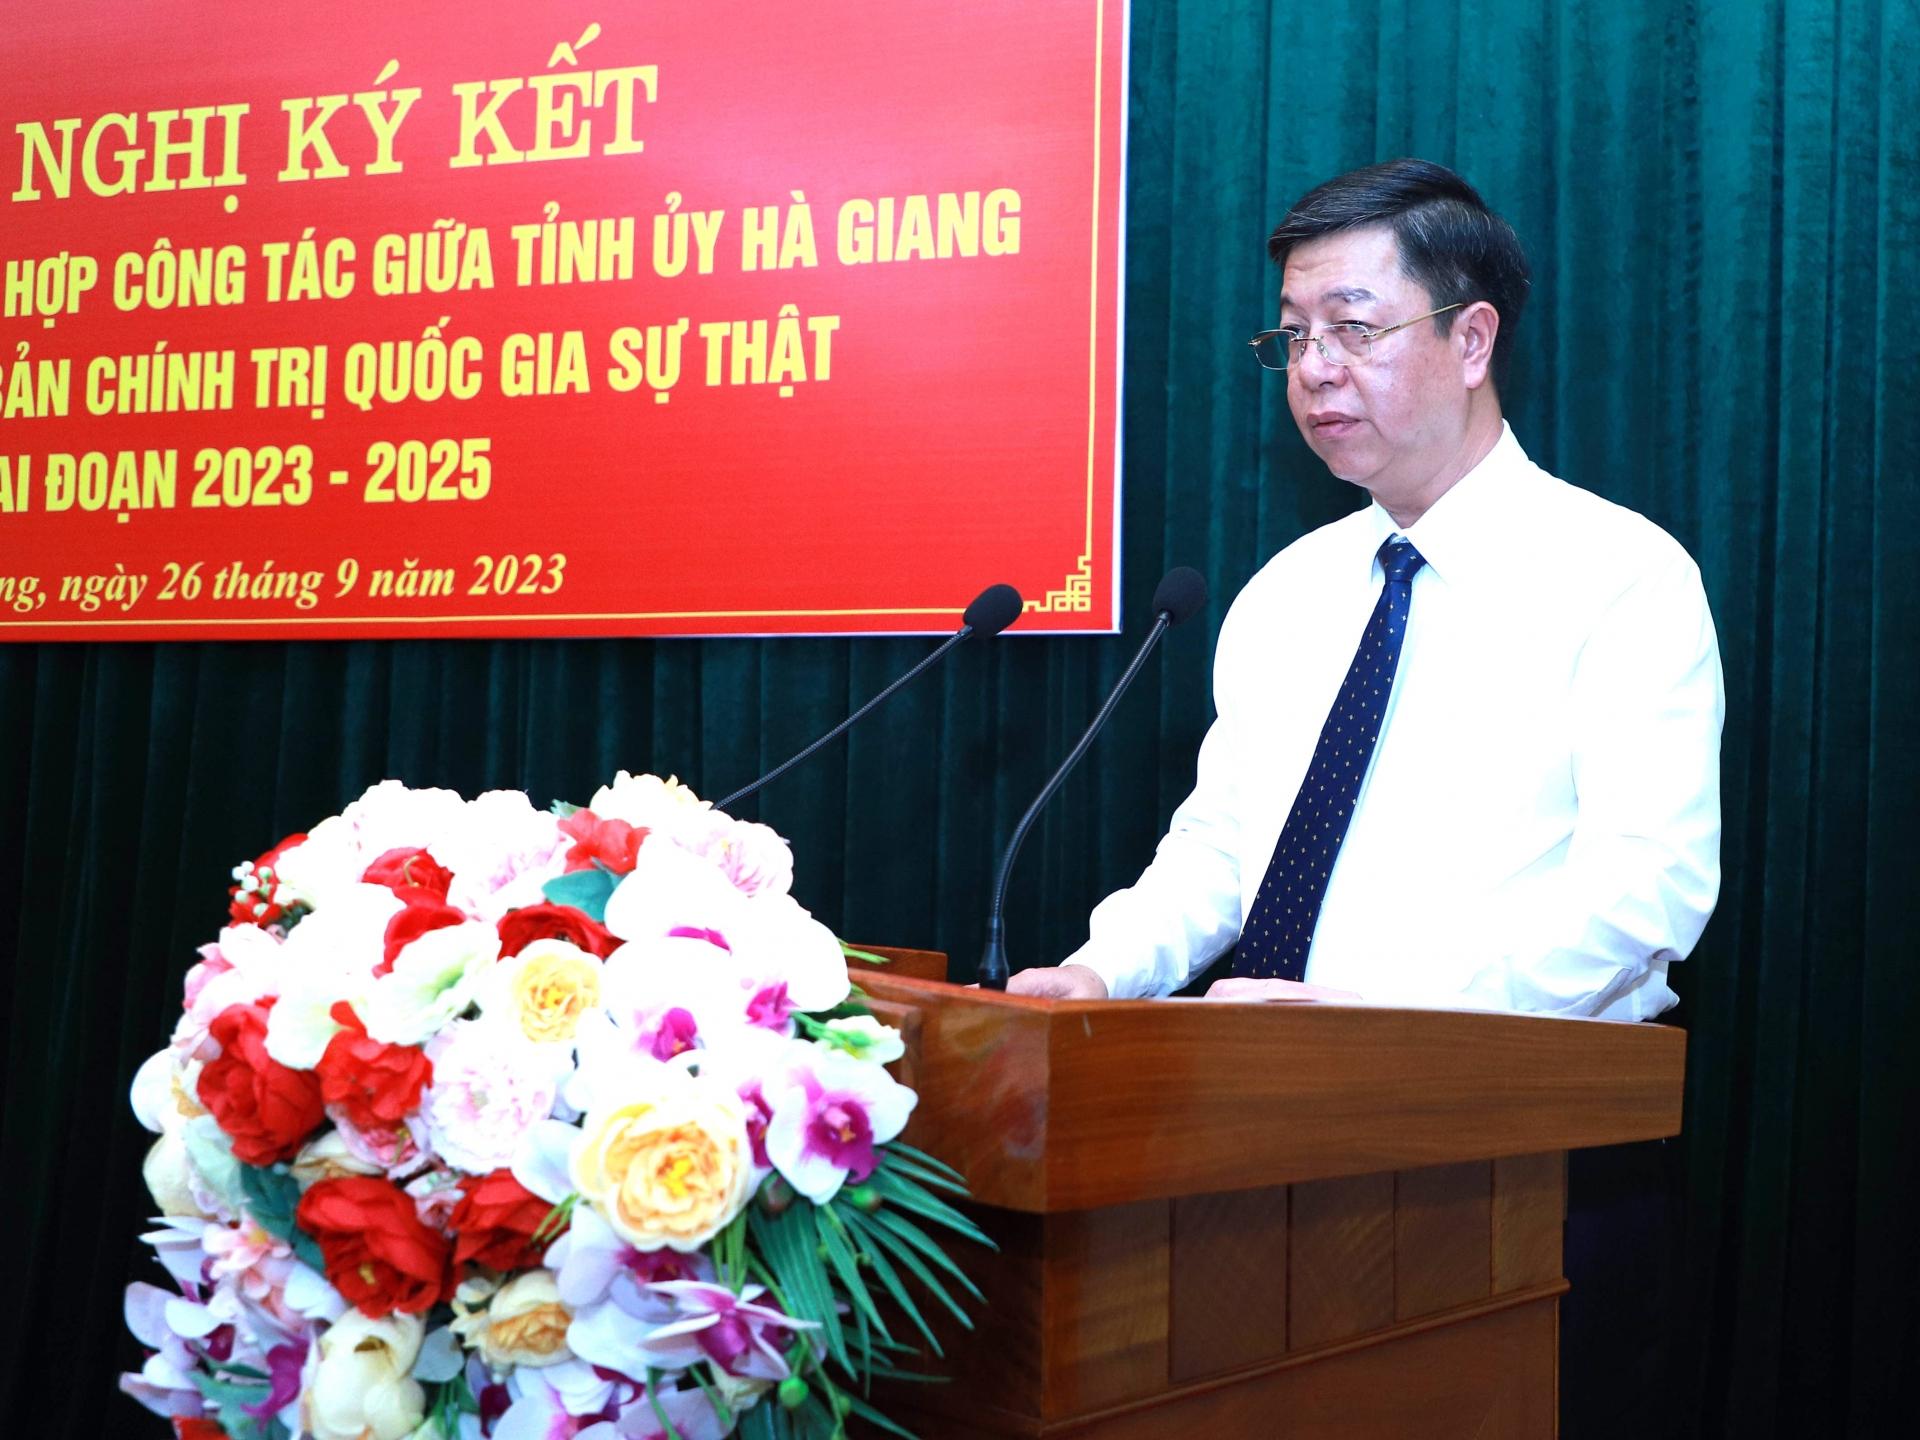 Giám đốc, Tổng Biên tập Nhà xuất bản Chính trị Quốc gia Sự thật Vũ Trọng Lâm phát biểu tại hội nghị.